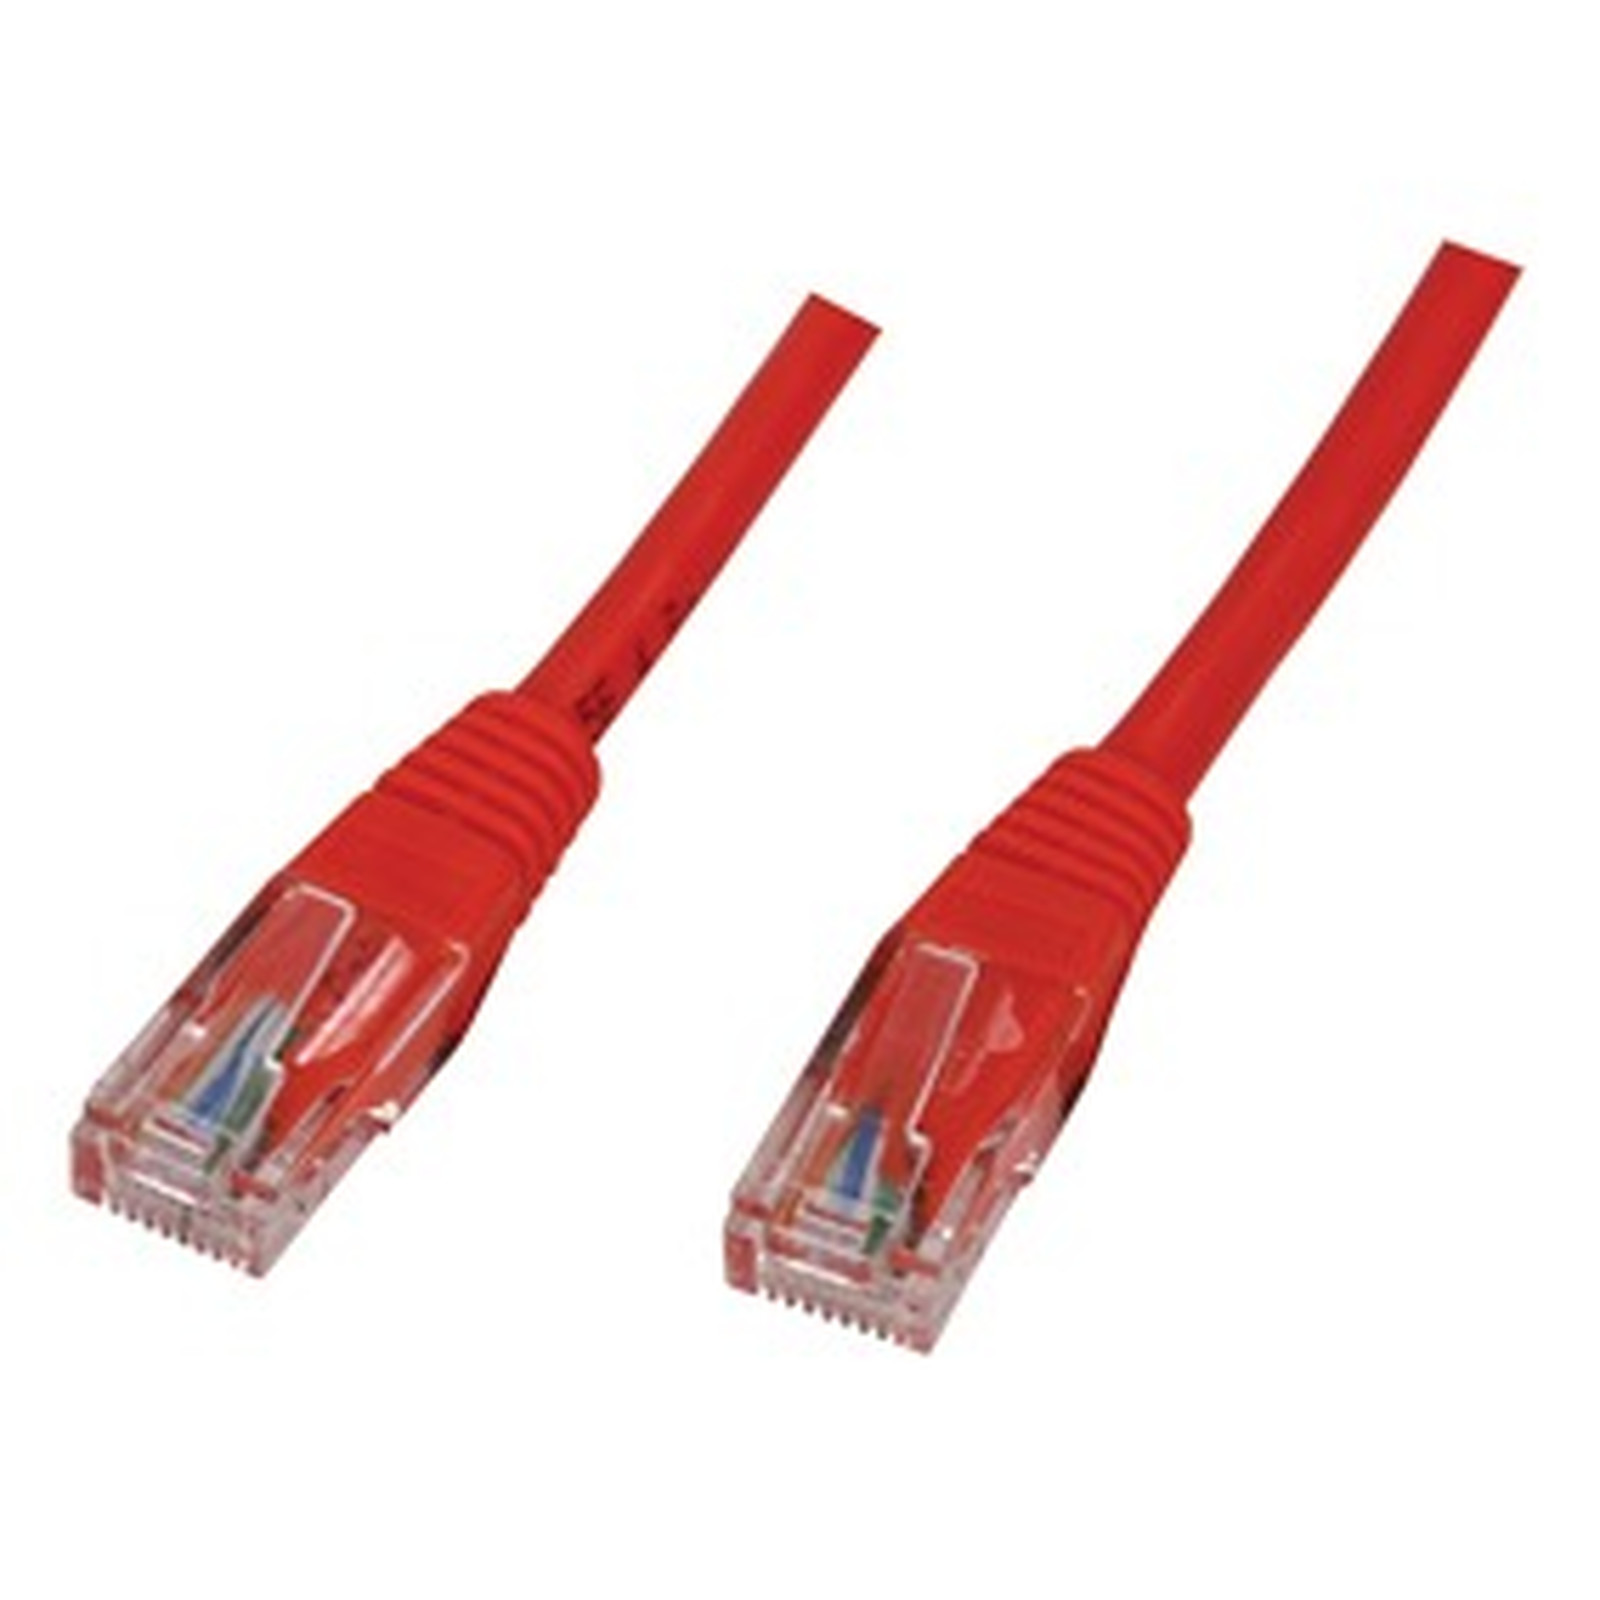 Cable RJ45 categorie 5e U/UTP 10 m (Rouge) - Cable RJ45 Generique